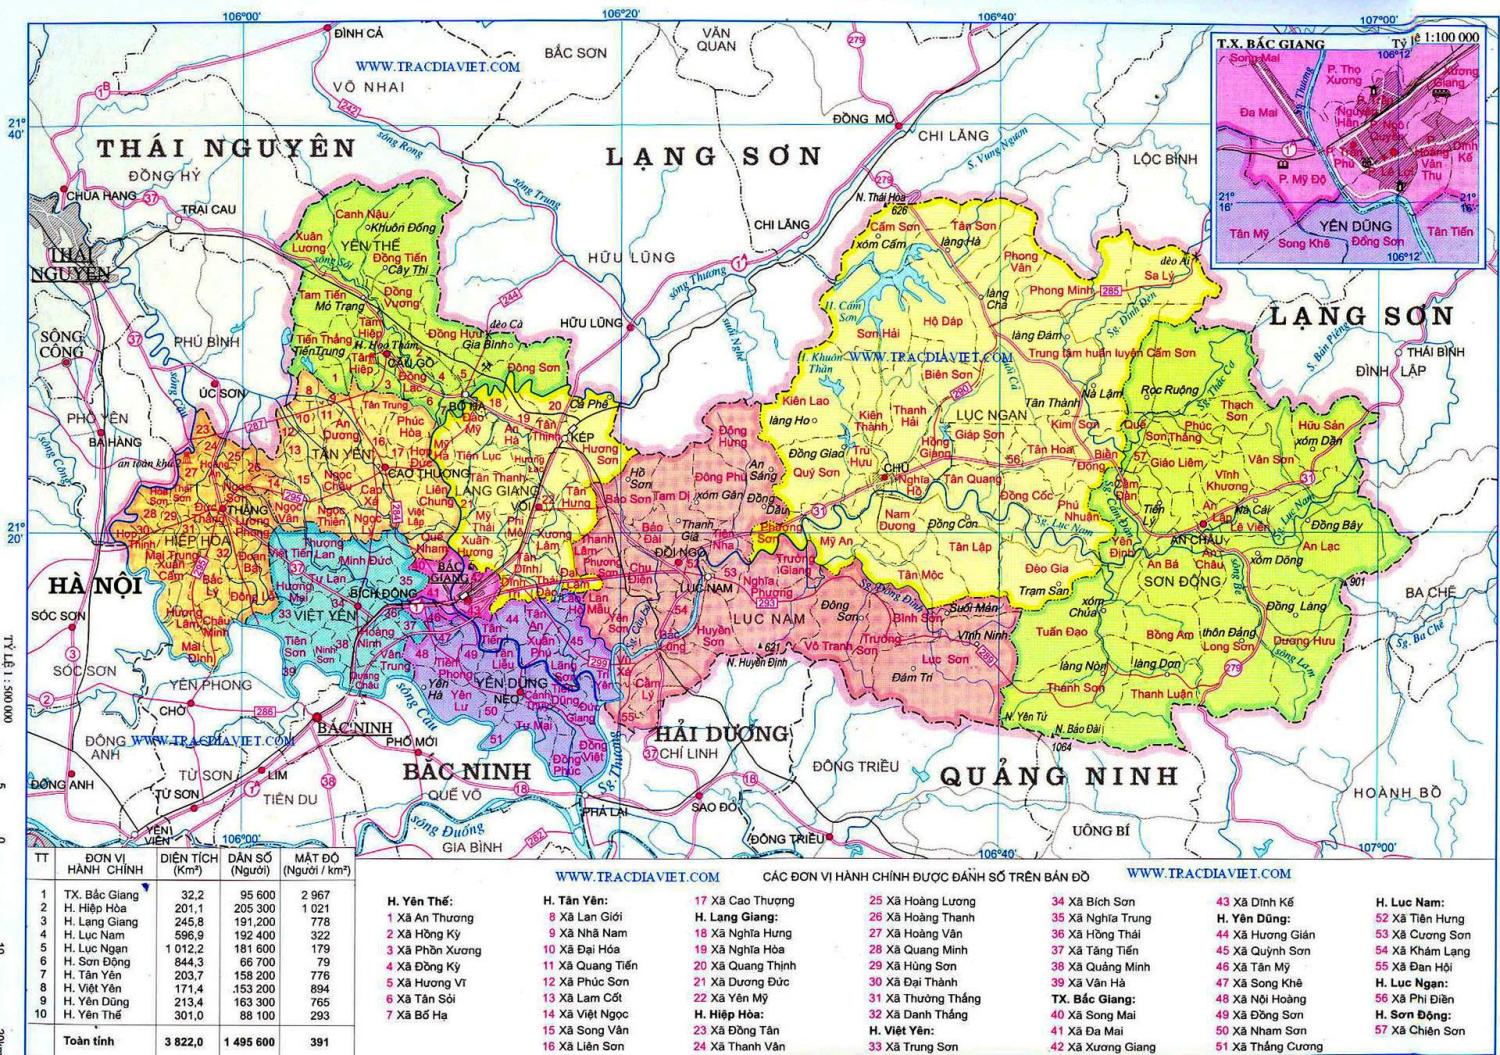 Bản đồ địa chính Bắc Giang: Tìm hiểu các loại đất, sơn đồng hoặc mặt nước tại Bắc Giang với bản đồ địa chính chính xác nhất. Đây là tài liệu thông tin hữu ích giúp bạn tiếp cận môi trường và phát triển kinh tế địa phương hiệu quả hơn.